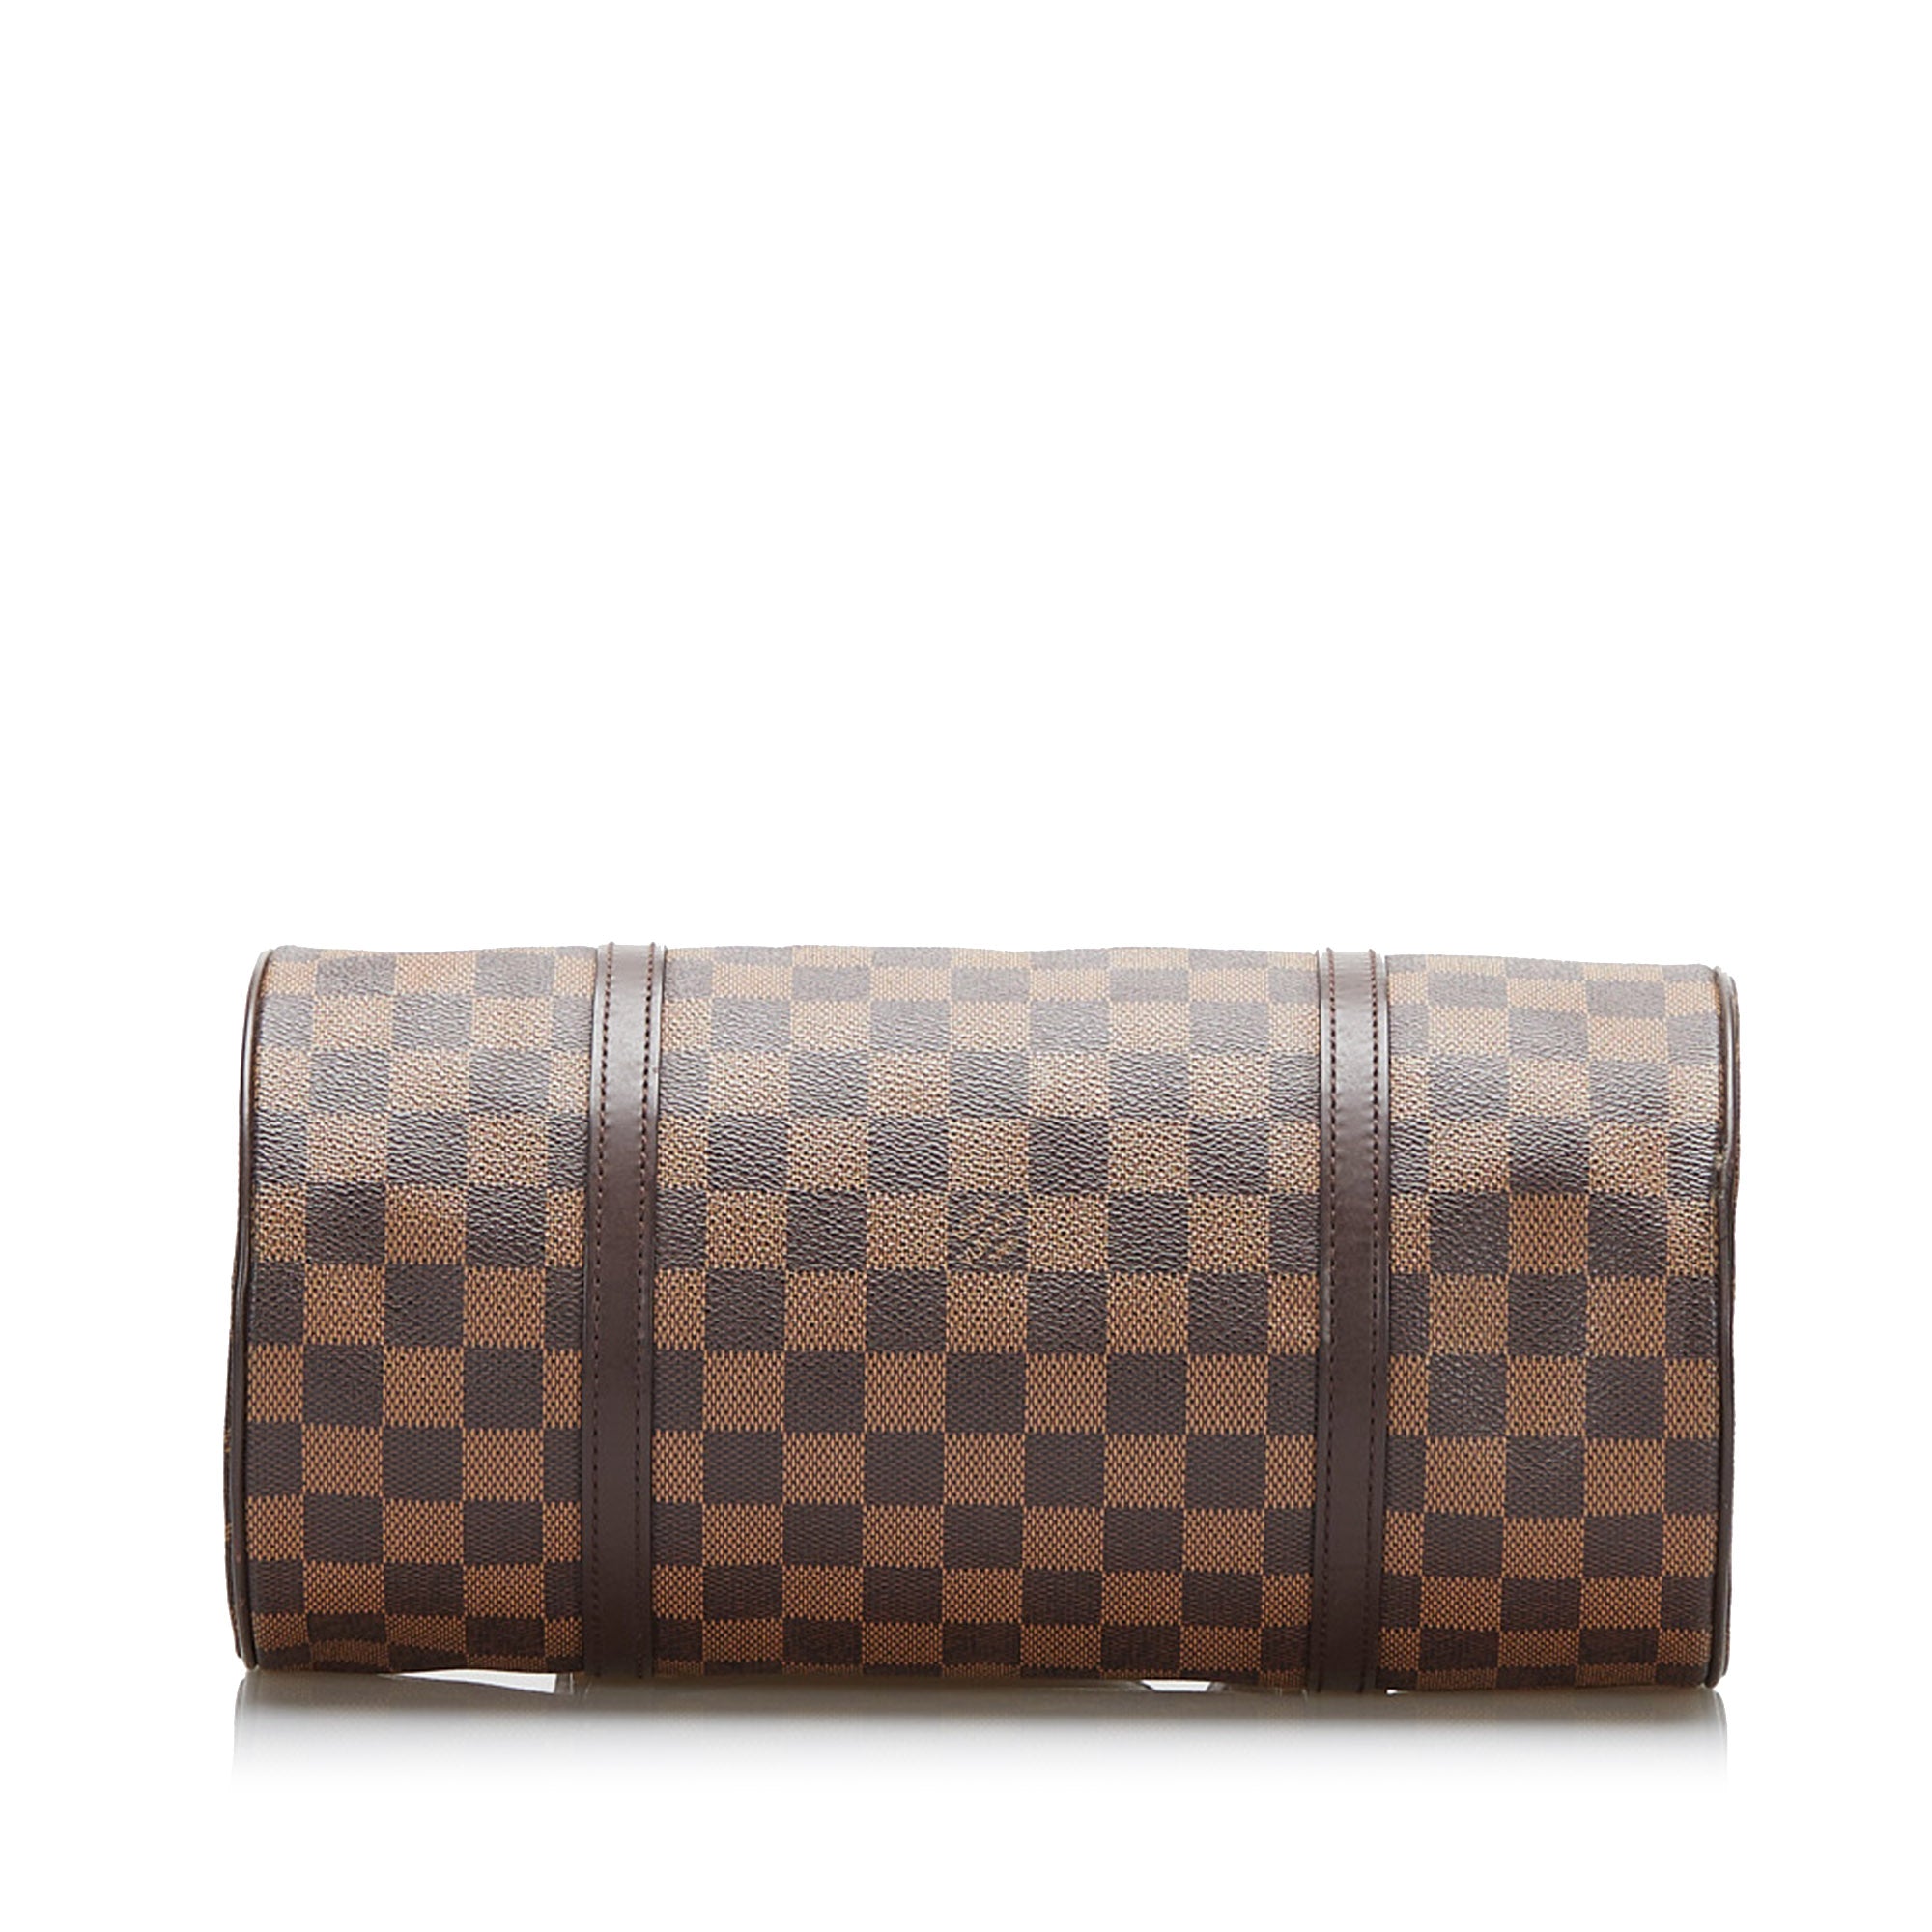 Louis Vuitton, Bags, Authentic Louis Vuitton Damier Papillon 3 Hand Bag  Purse